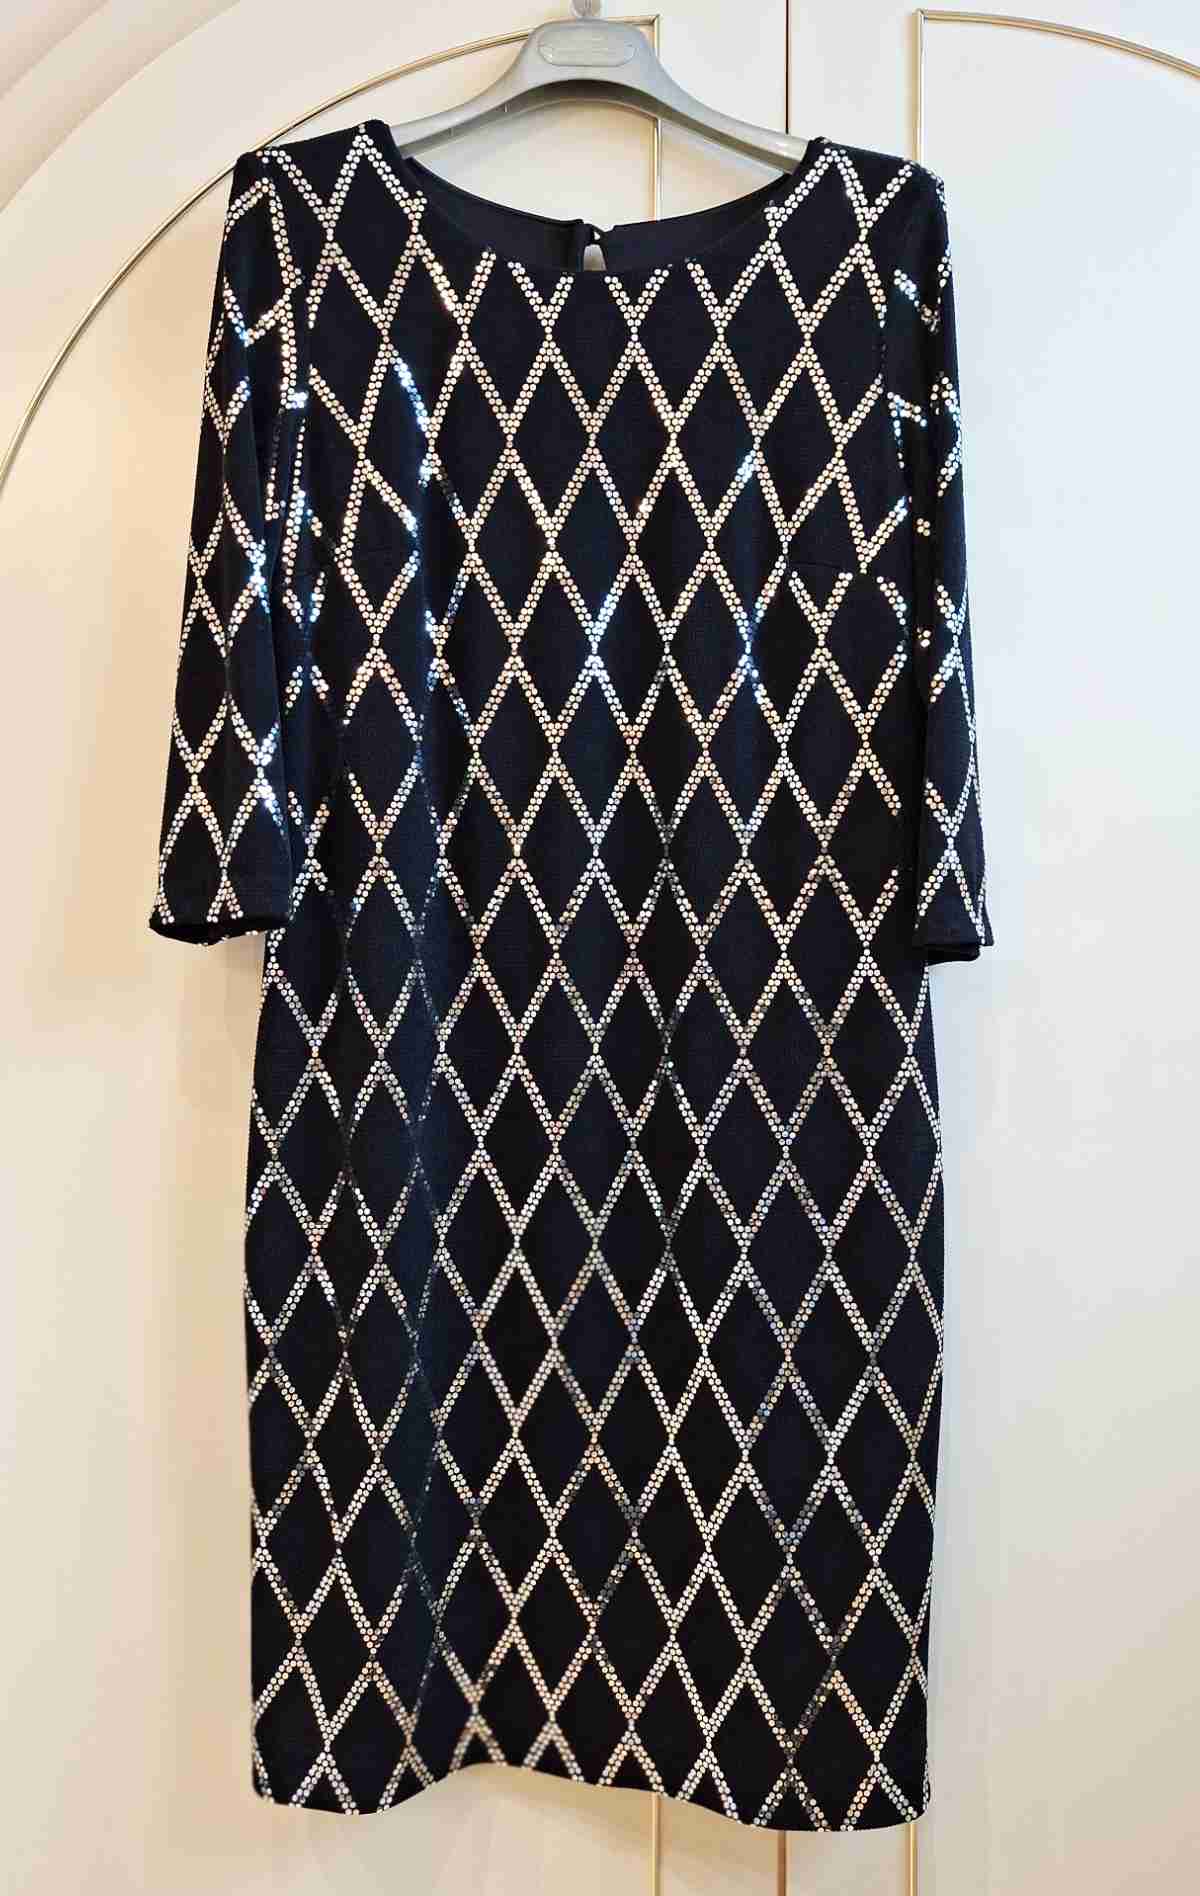 Joseph Ribkoff Abendkleid, in schwarz mit silber Rauten, Größe 40, neuwertig, Frontalansicht.